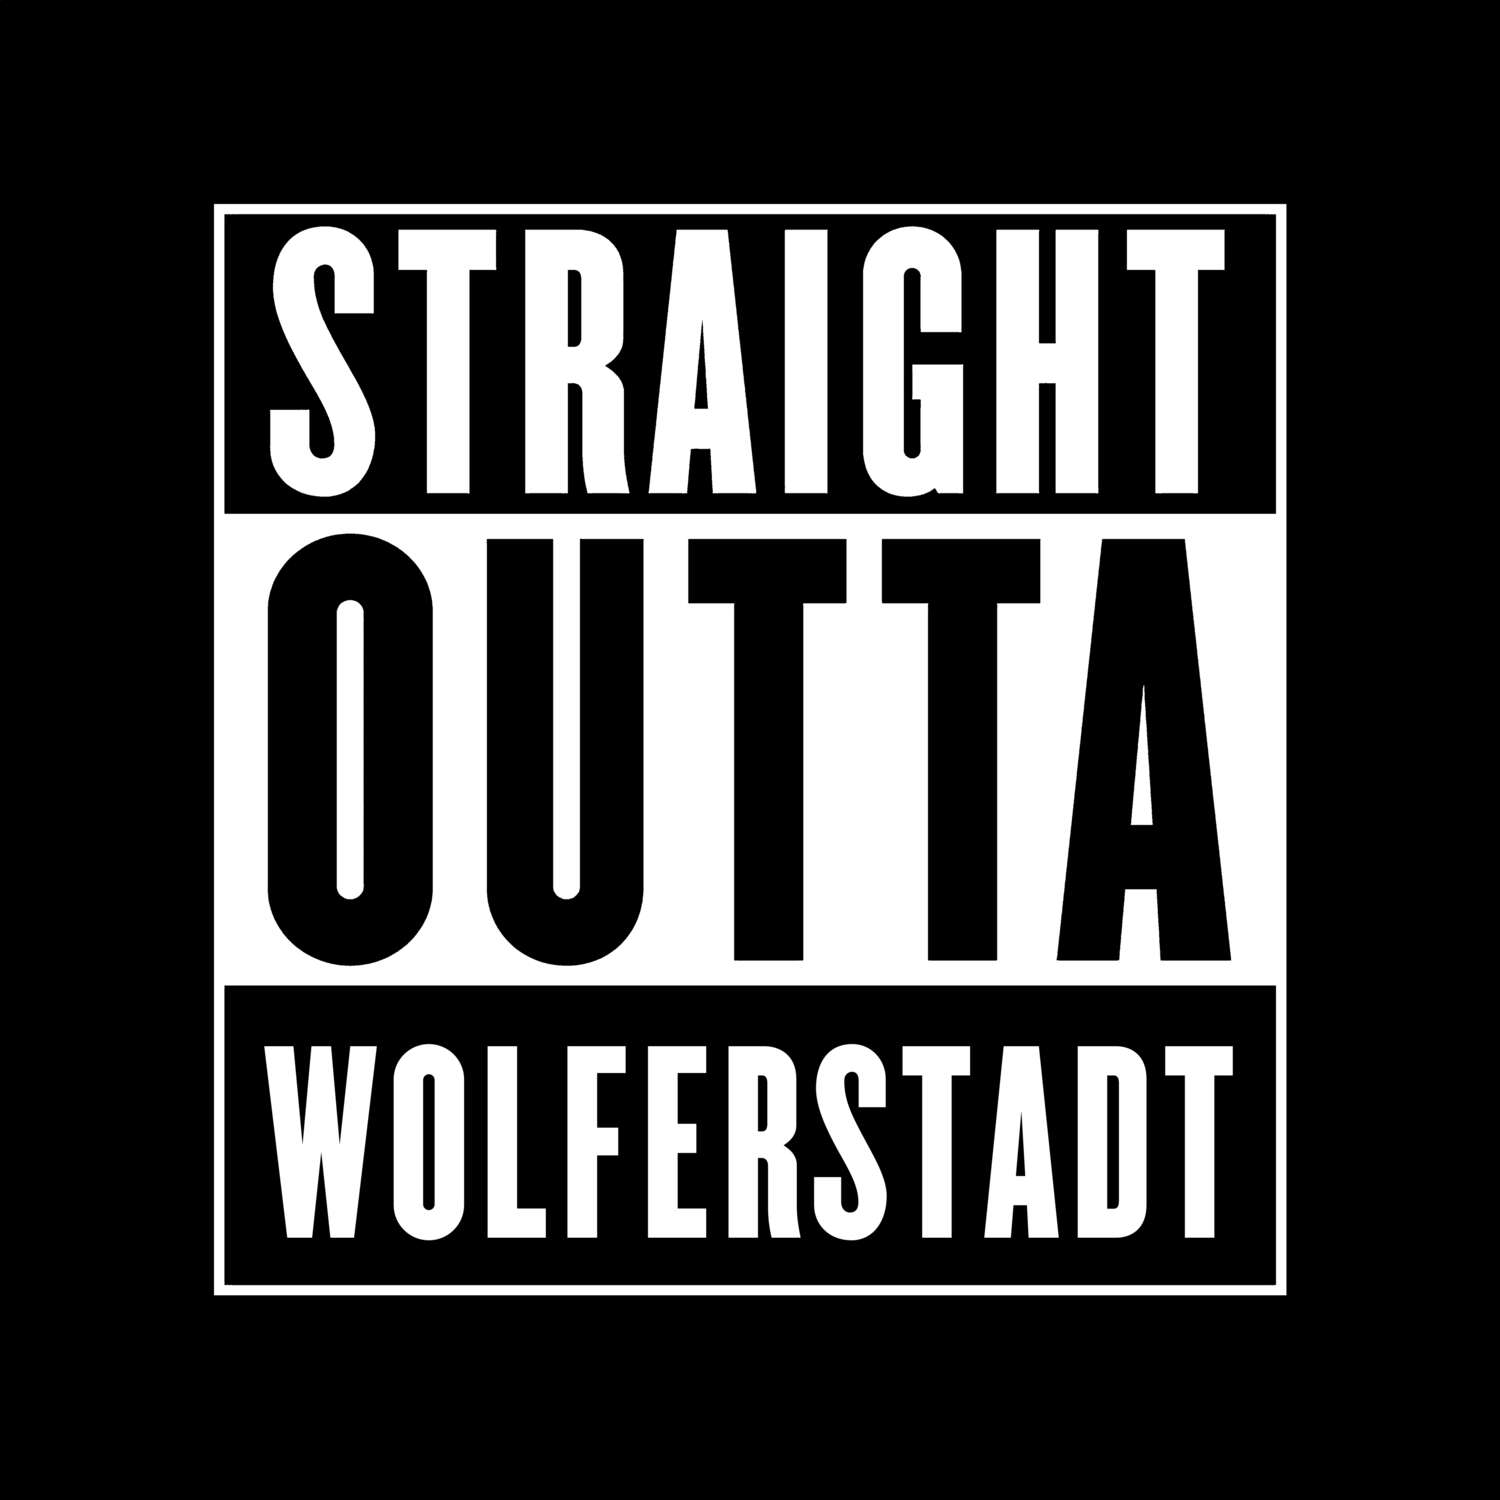 Wolferstadt T-Shirt »Straight Outta«